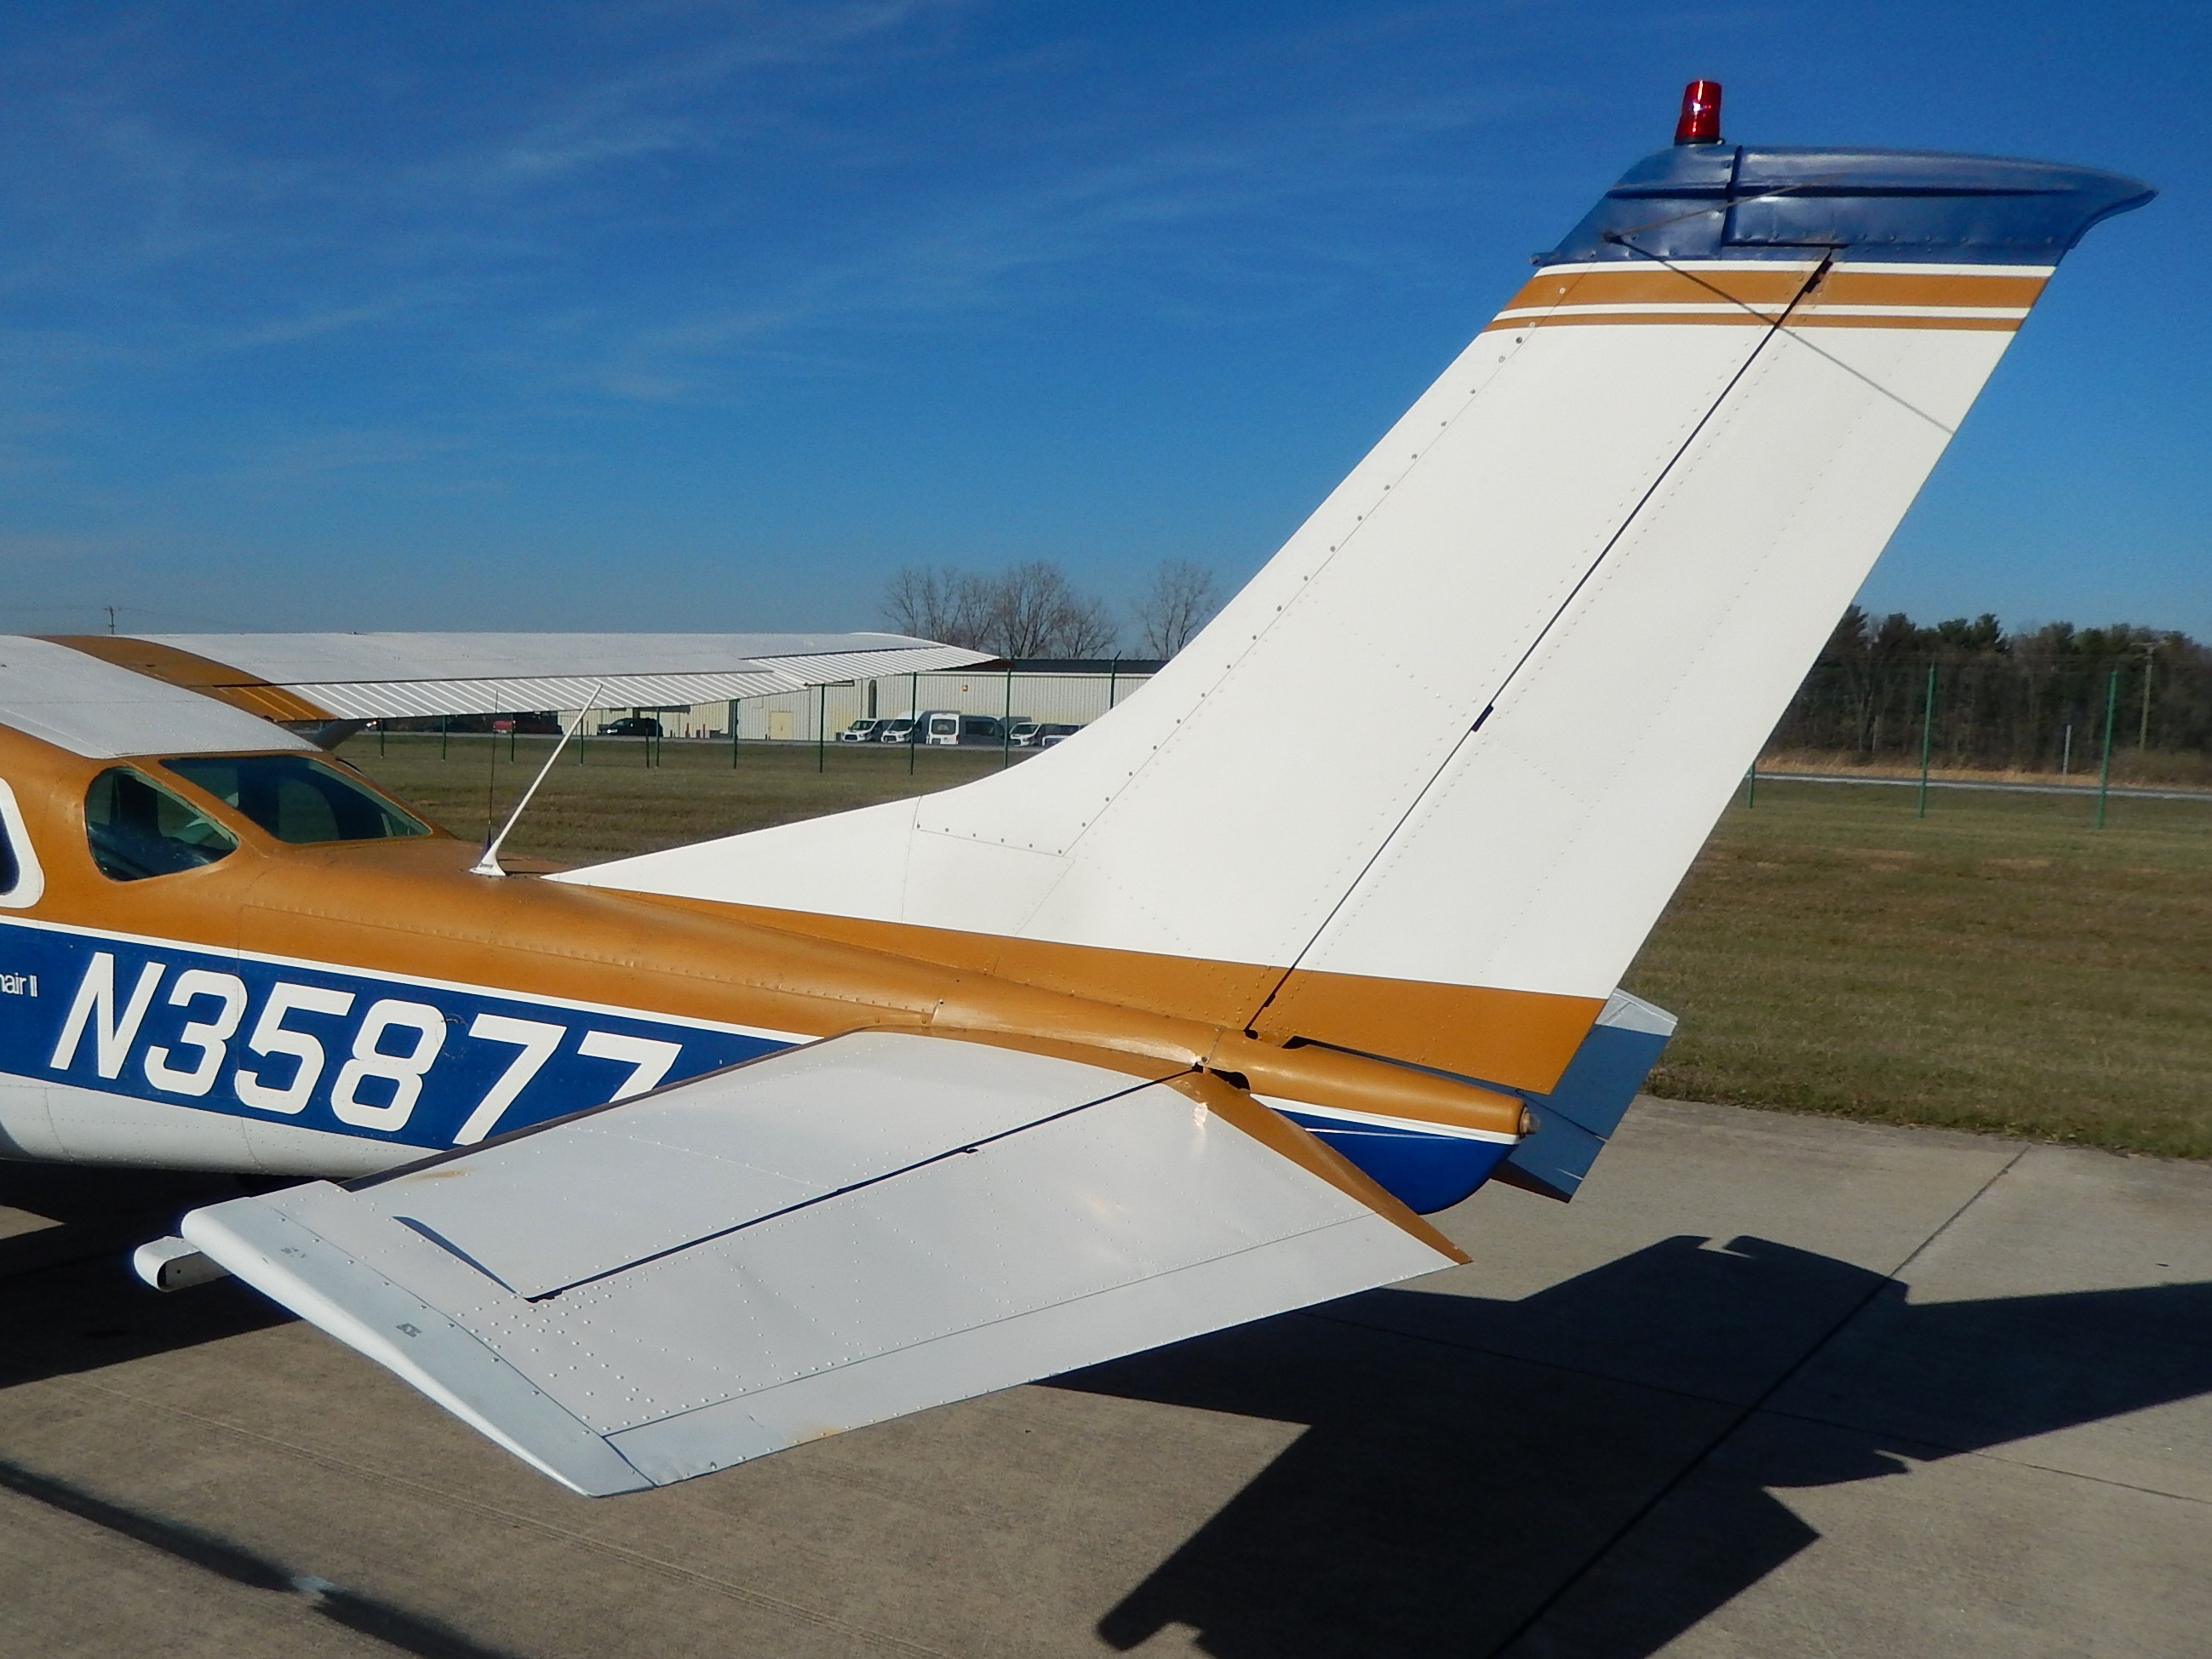 1974 Cessna TU206F  N35877